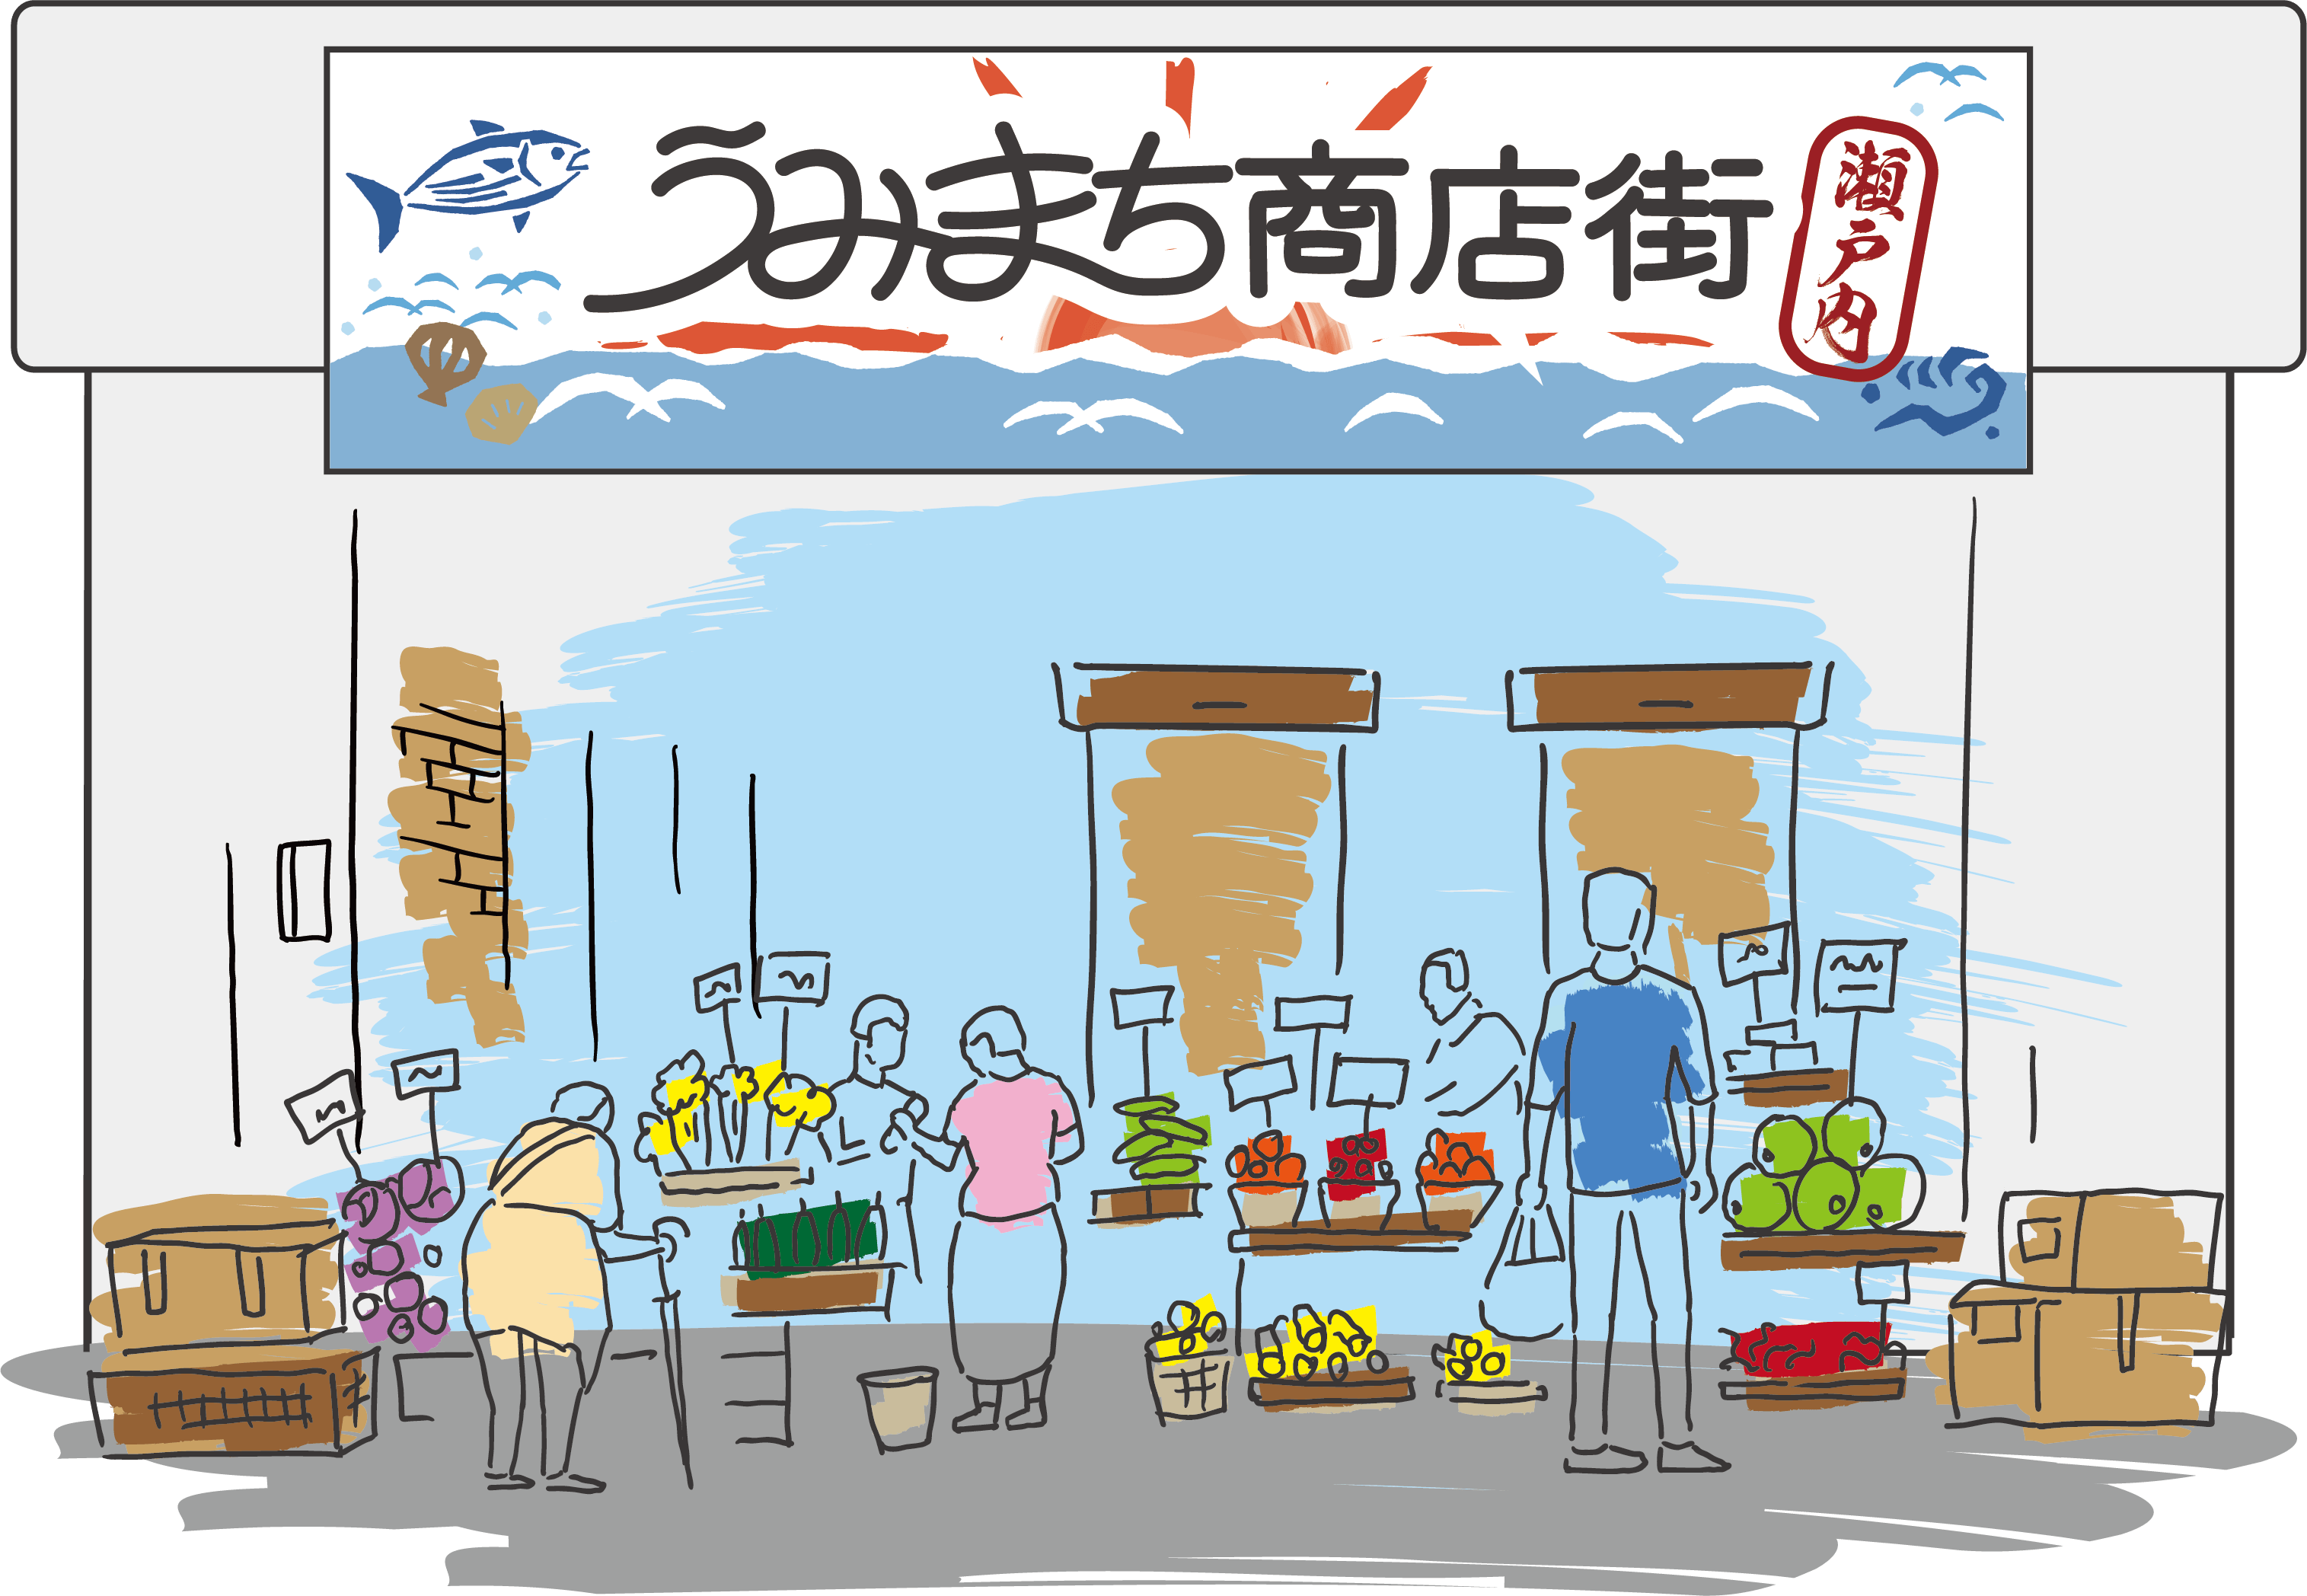 Takamatsu Sea & Sun Market